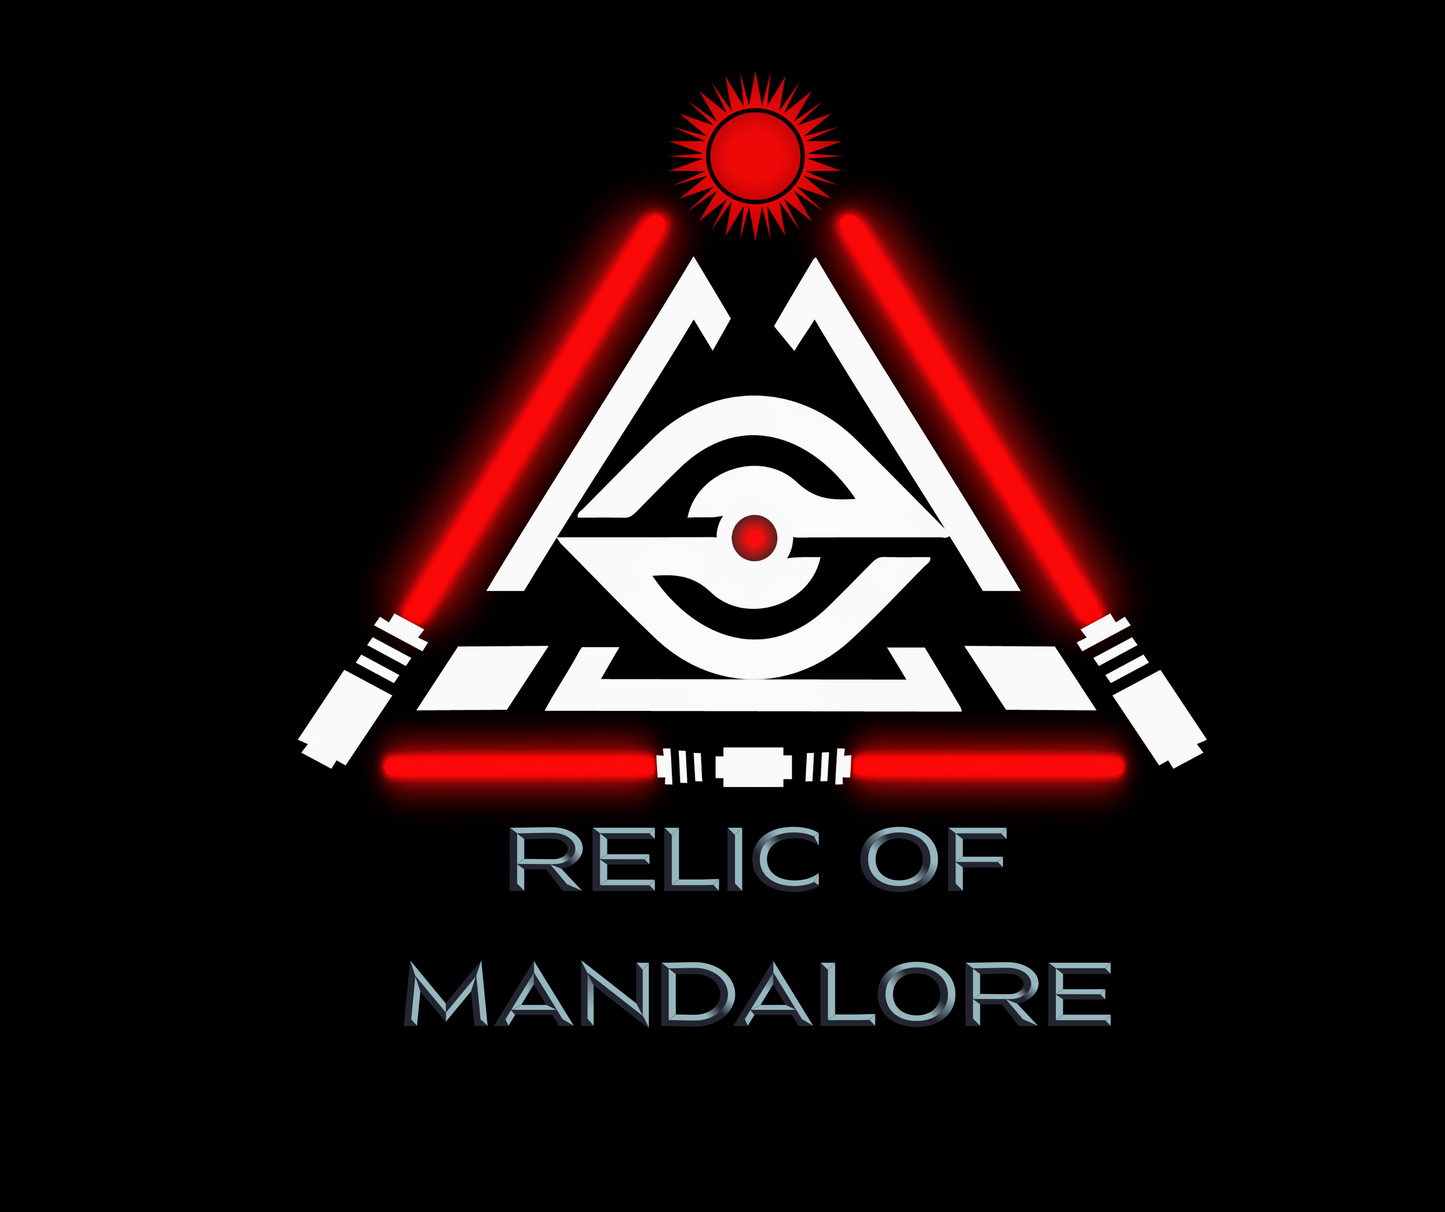 Relic of Mandalore